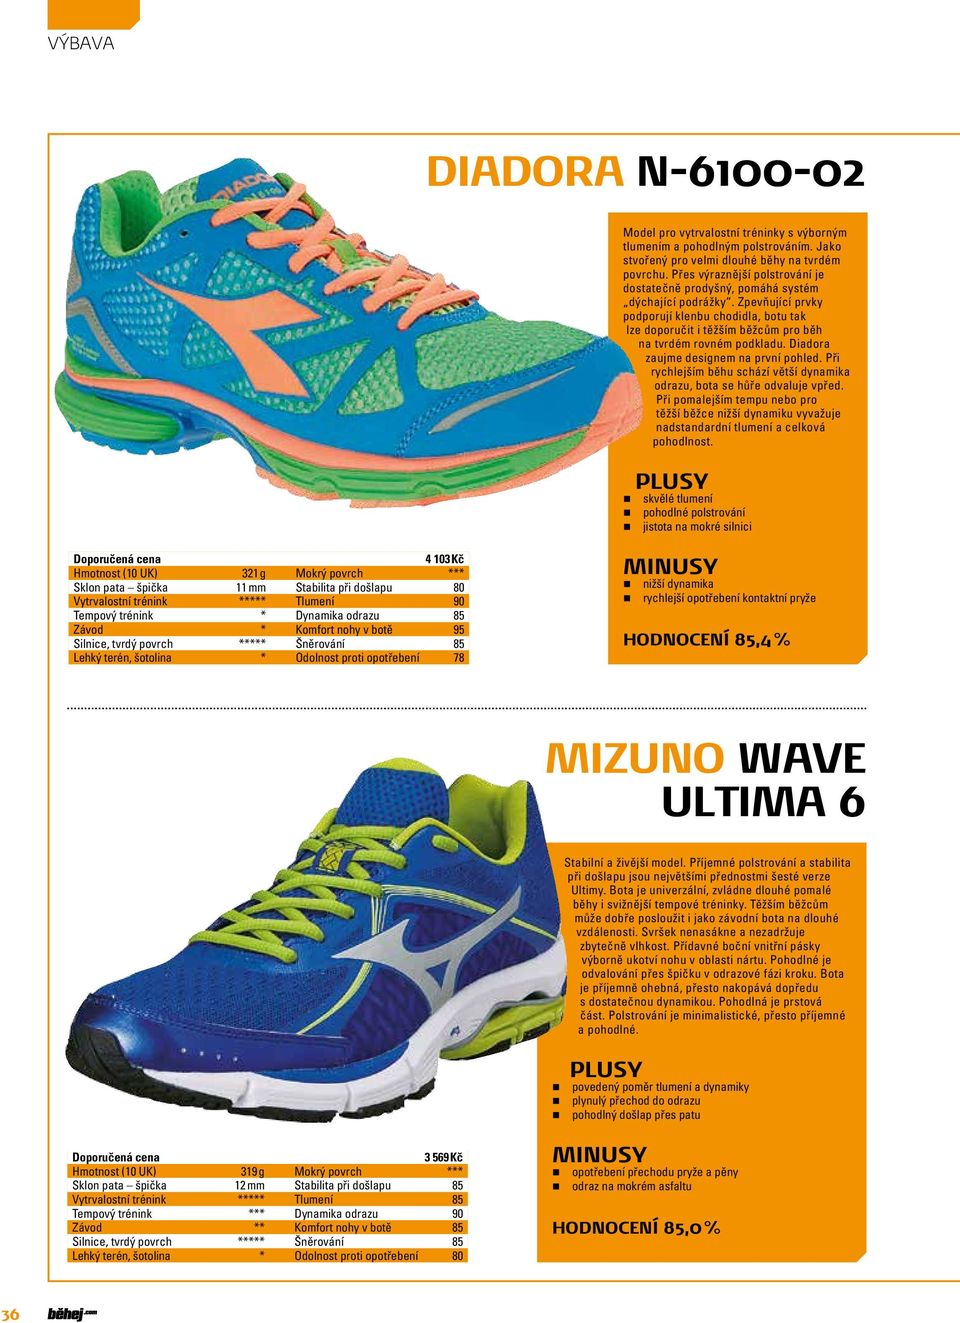 Zpevňující prvky podporují klenbu chodidla, botu tak lze doporučit i těžším běžcům pro běh na tvrdém rovném podkladu. Diadora zaujme designem na první pohled.